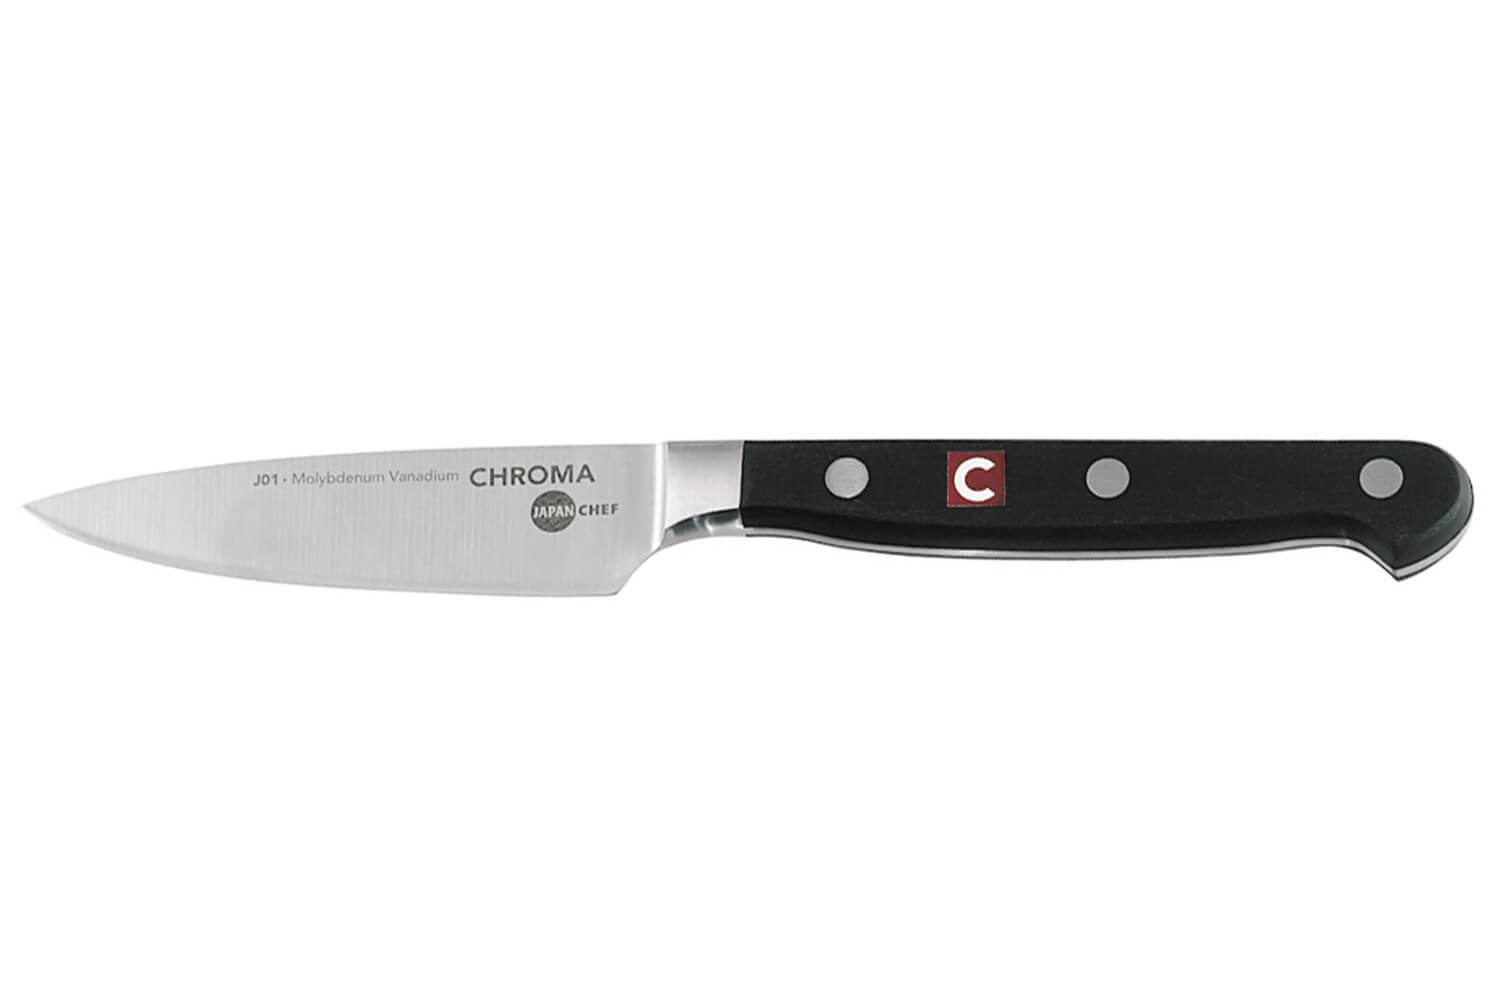 Couteau à fromage 2 mains - 60 cm - Au Nain - Meilleur du Chef